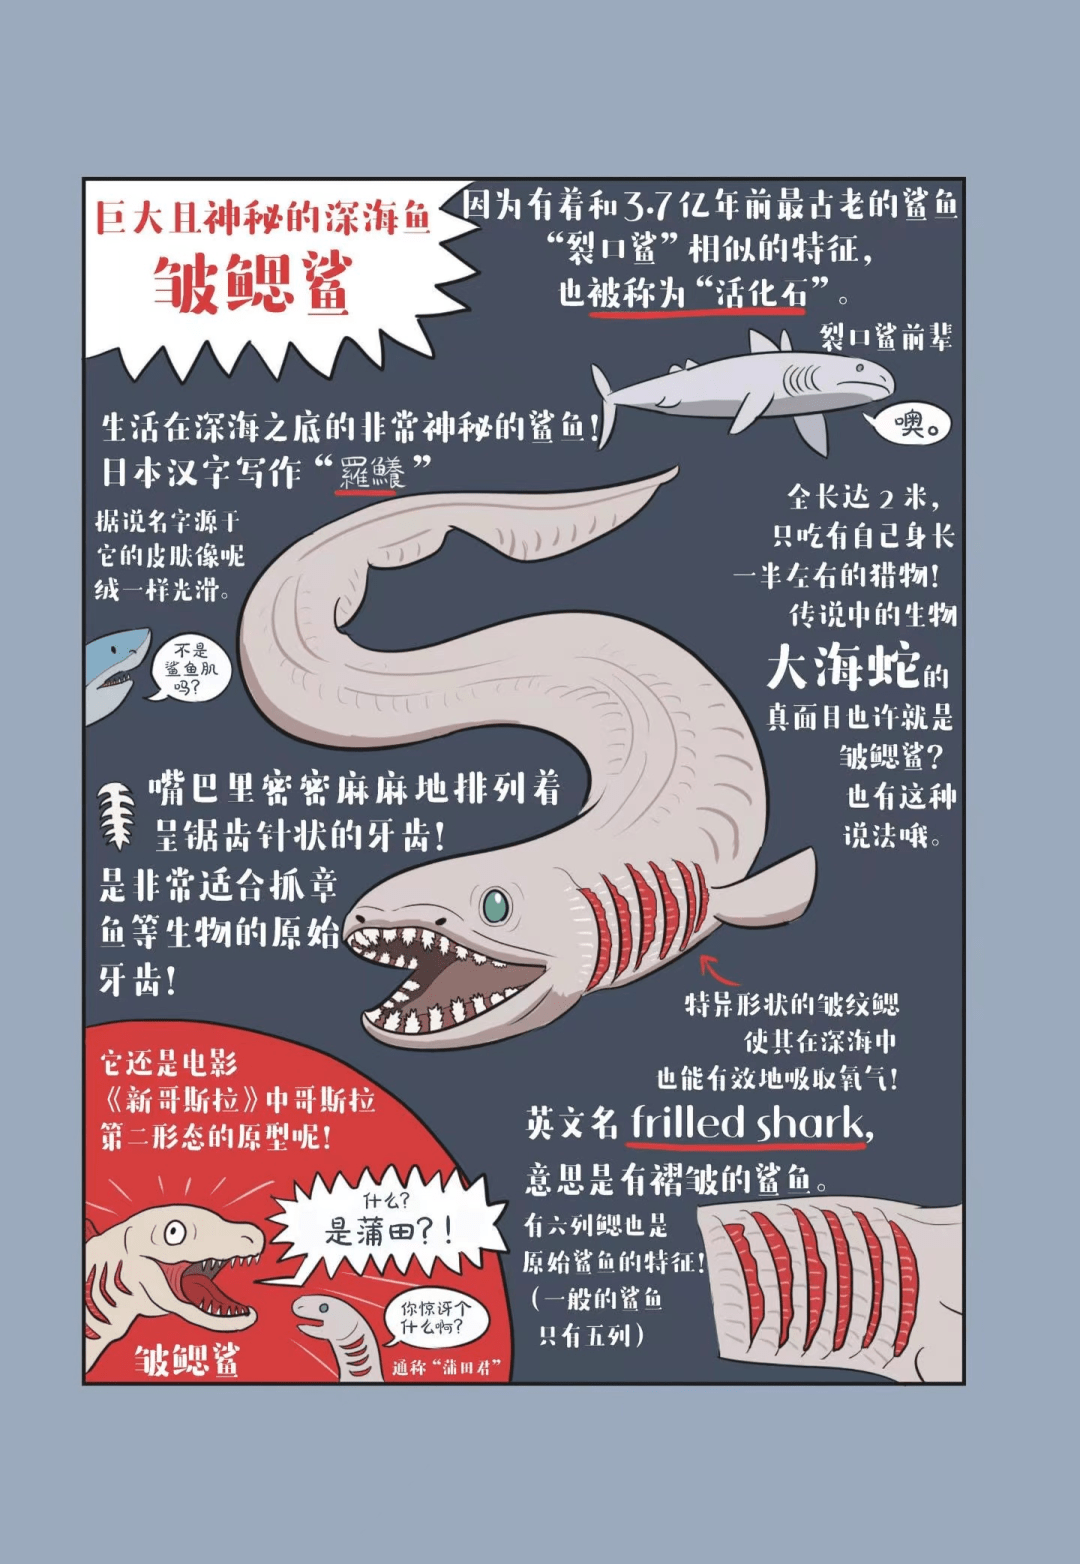 深海鱼:皱鳃鲨皇帝企鹅 & 北极熊不可思议生物:鸭嘴兽【日】沼笠航